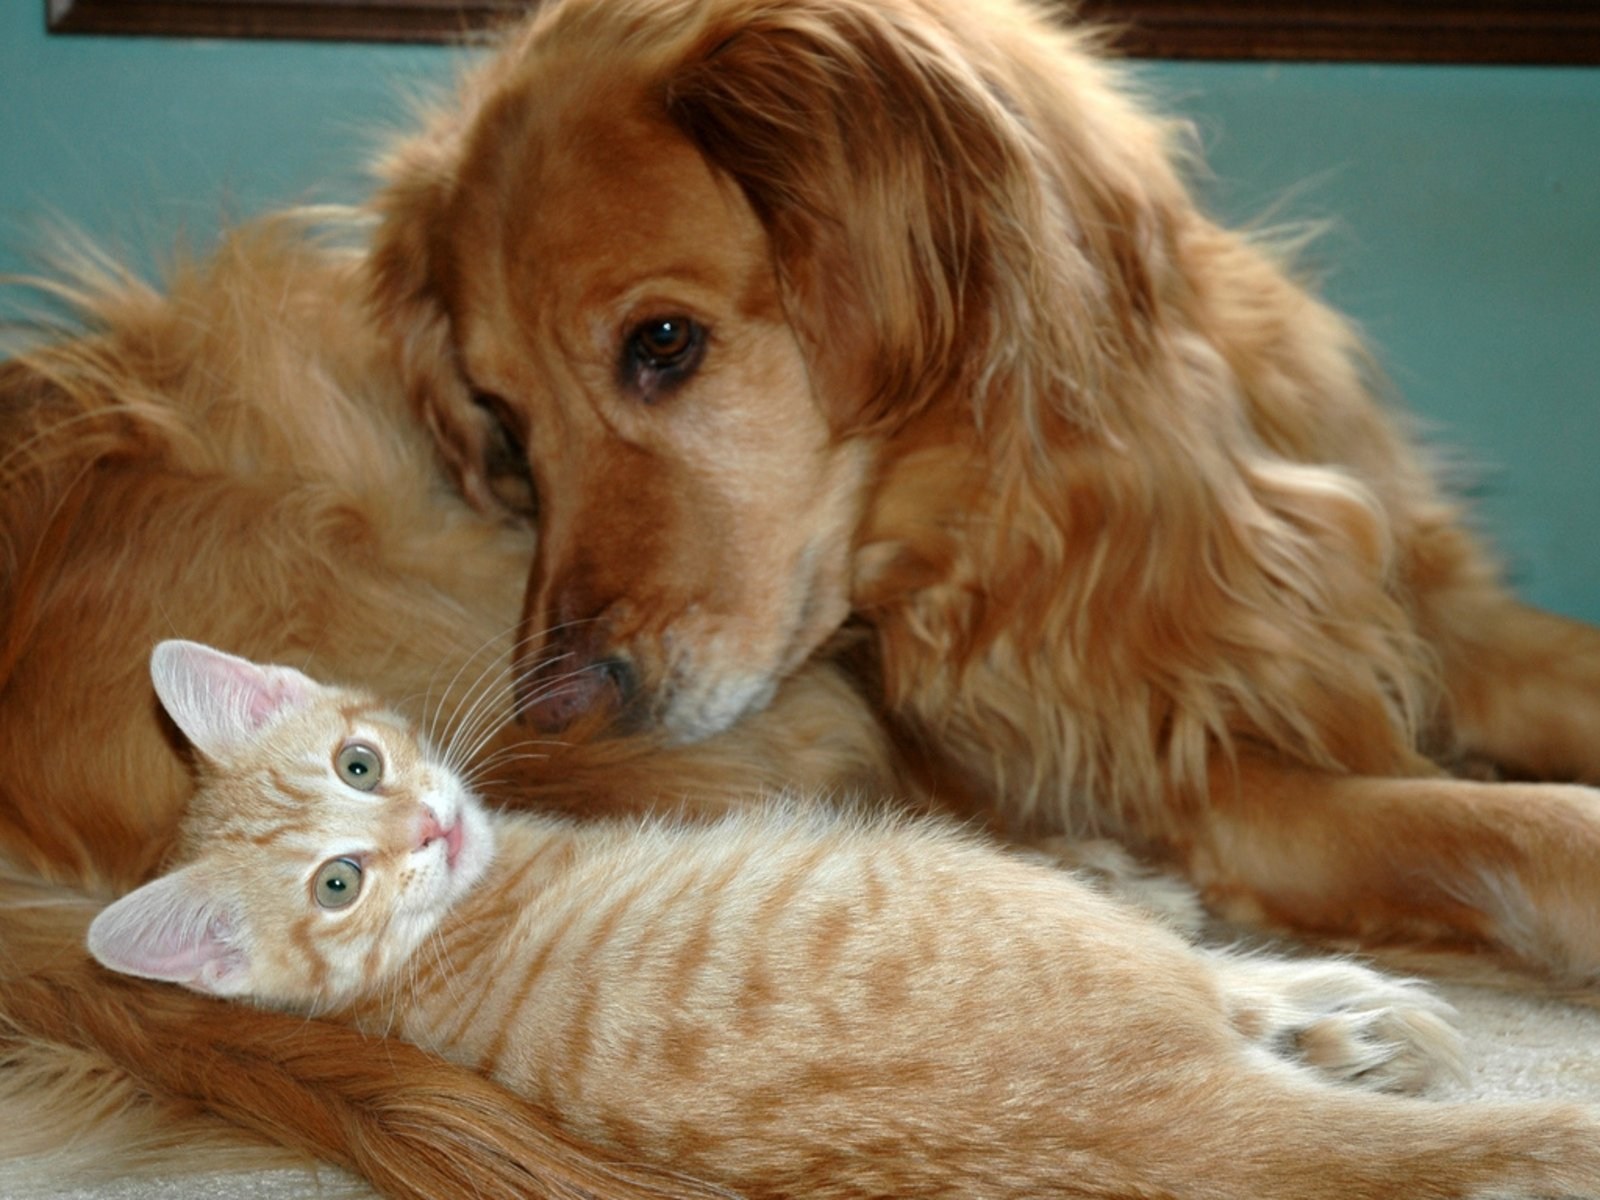 Животные породы кошек и собак. Кошки и собаки. Картинки кошек и собак. Rjireb b CJ,FRB. Собака и кошка вместе.